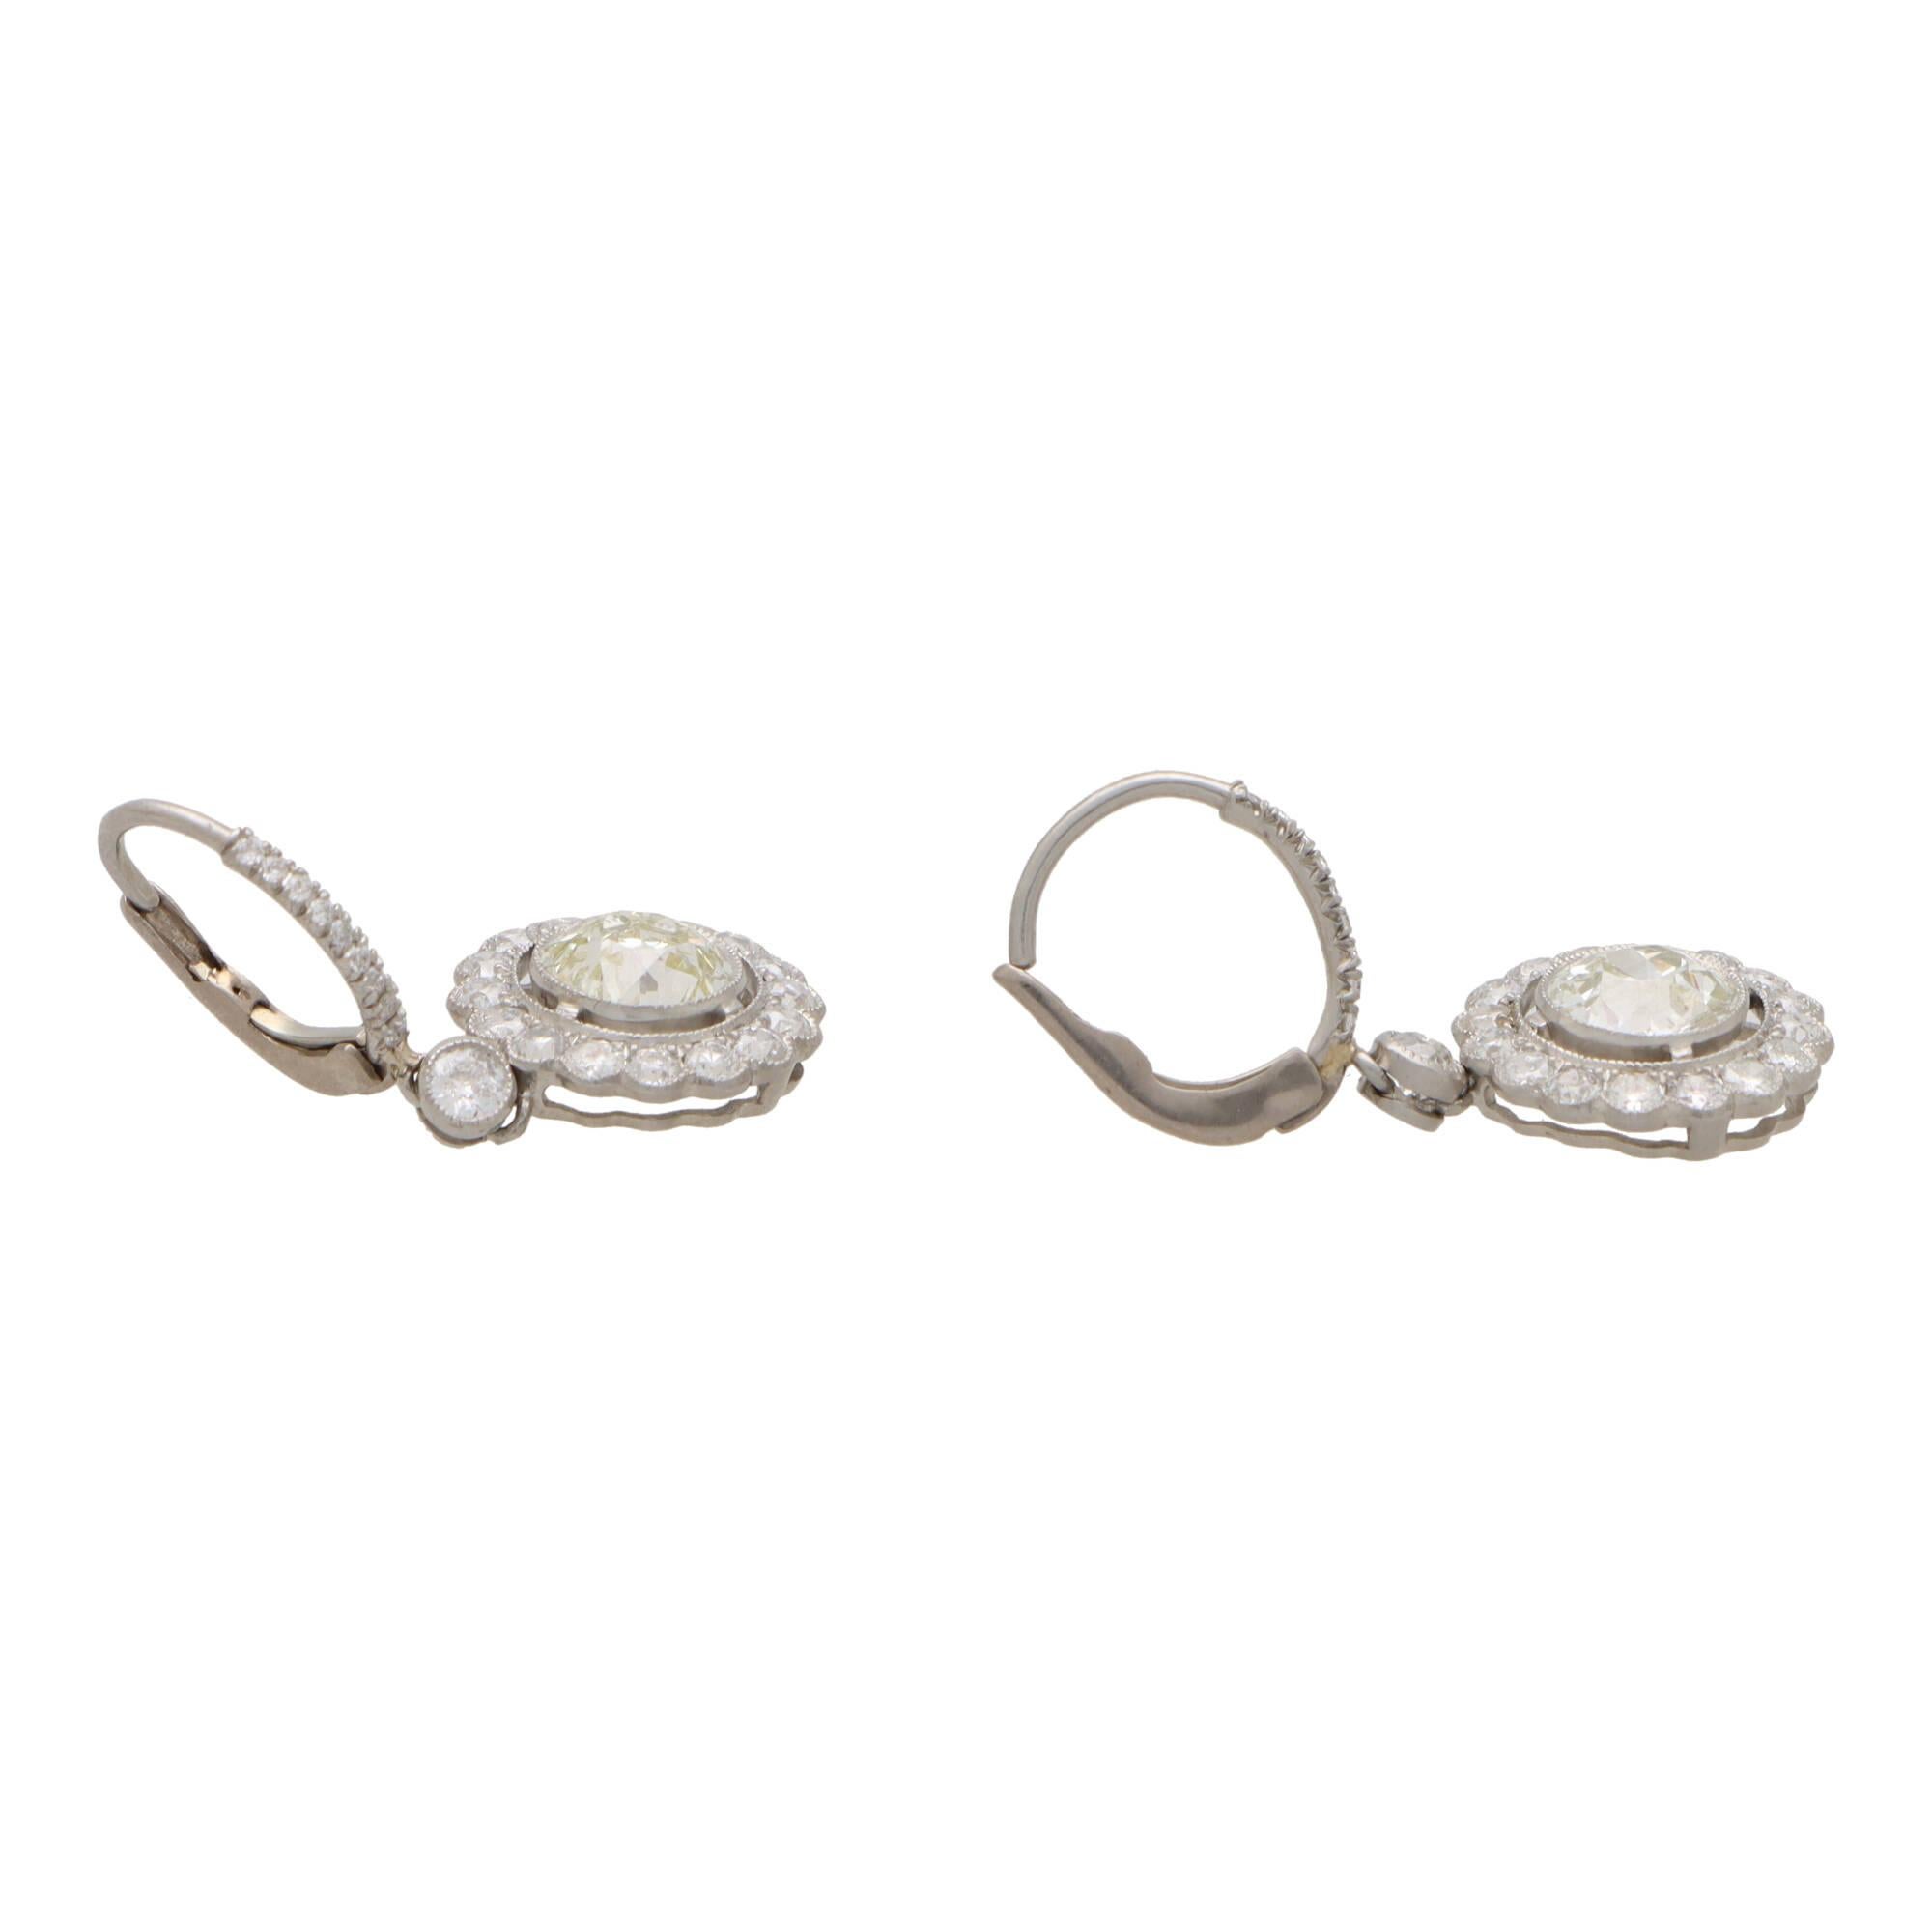 Ein wunderschönes Paar Vintage-inspirierter runder Diamant-Cluster-Ohrringe aus Platin.

Jeder Ohrring besteht aus einem einzelnen 1,25 Karat alten  Der zentrale Diamant im europäischen Schliff ist mit einer geschliffenen Kante in die Mitte eines